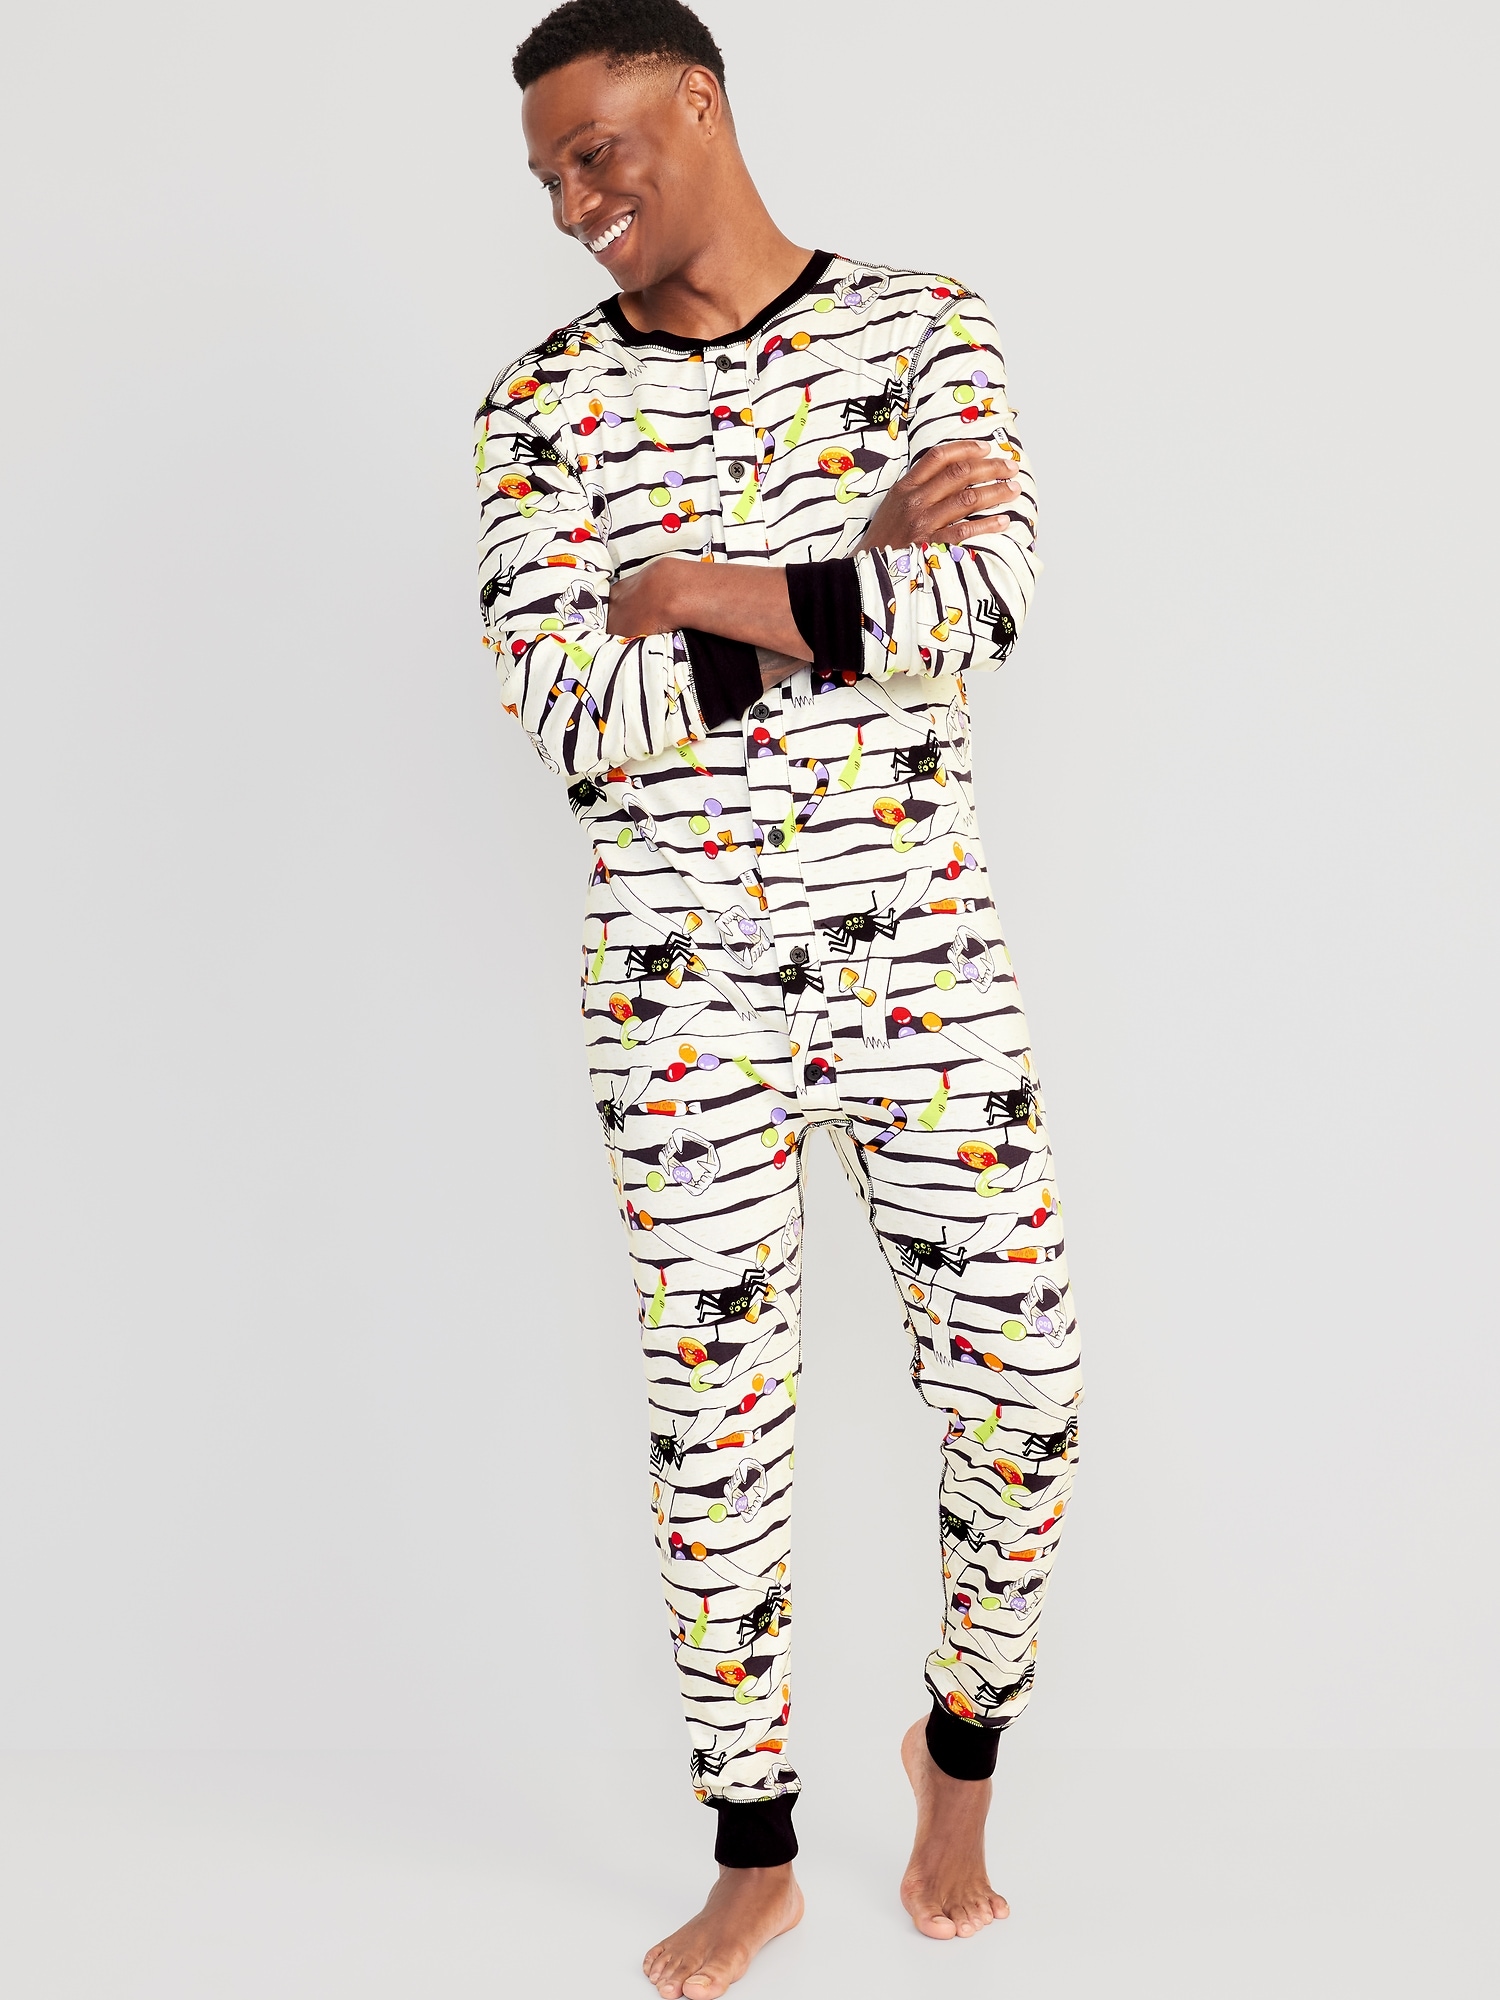 One Piece Pajamas